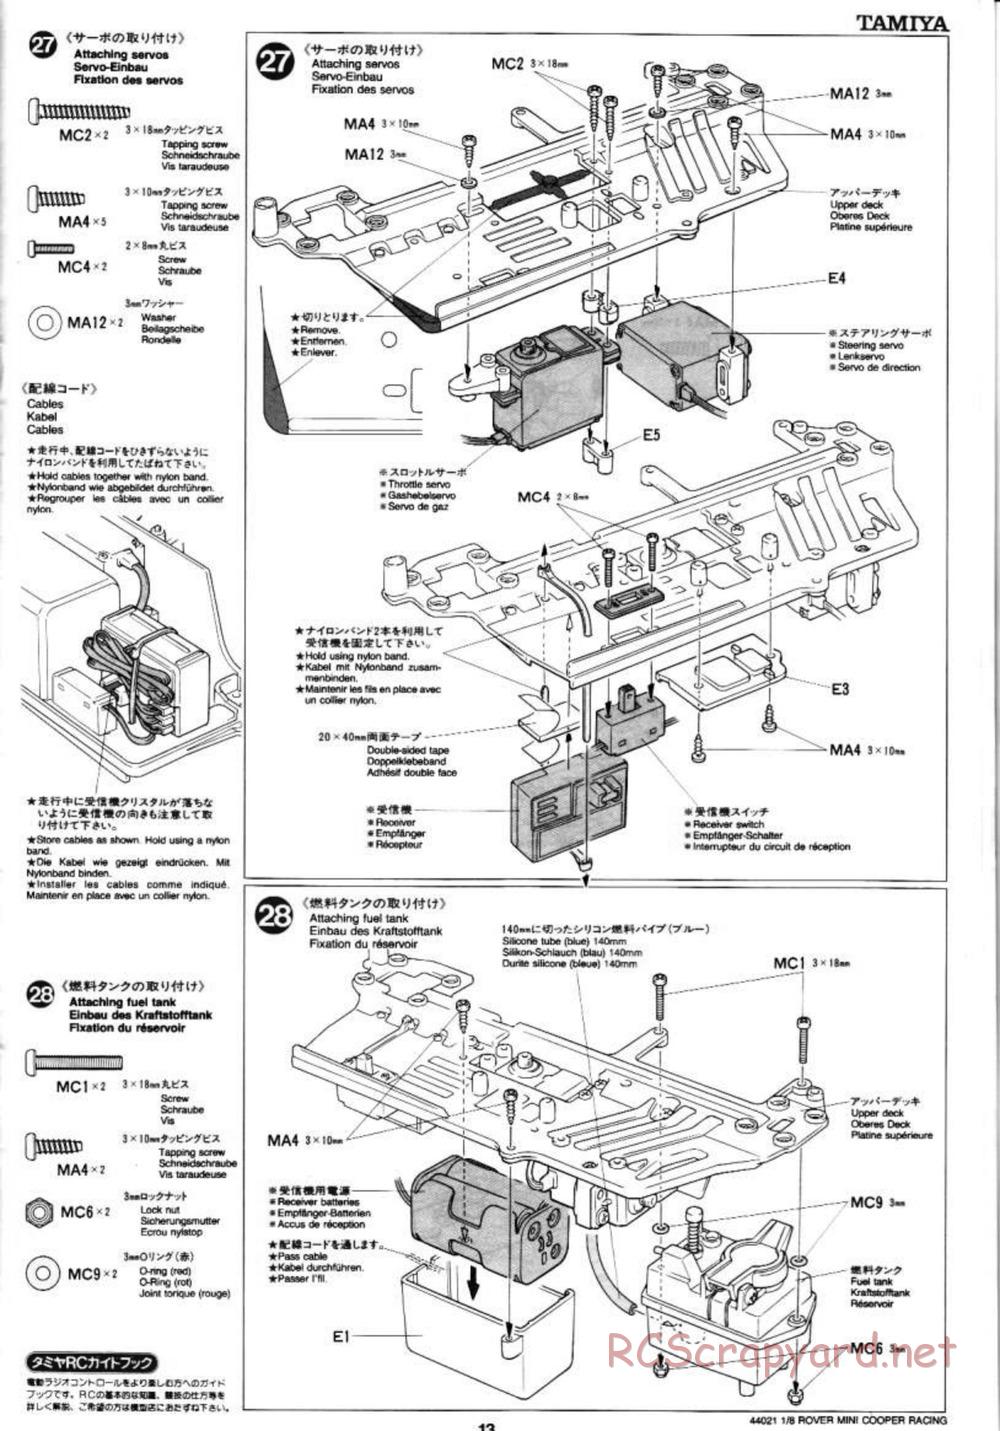 Tamiya - Rover Mini Cooper Racing - TG10 Mk.1 Chassis - Manual - Page 13